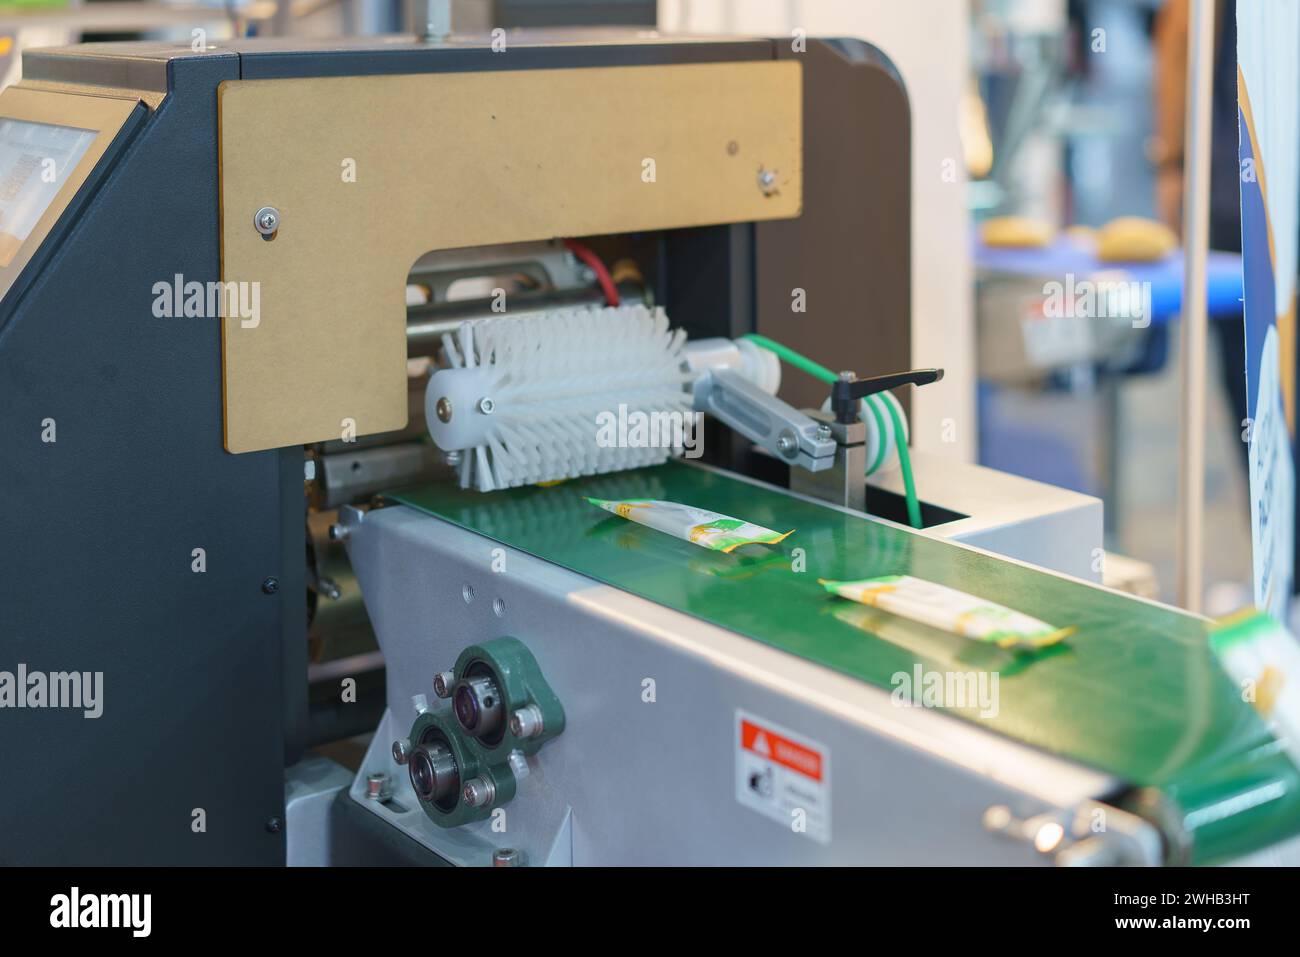 Nahaufnahme einer automatisierten Verpackungsmaschine im Betrieb, Verschließen von Snackpaketen auf einem grünen Förderband, mit mechanischen Komponenten in VI Stockfoto